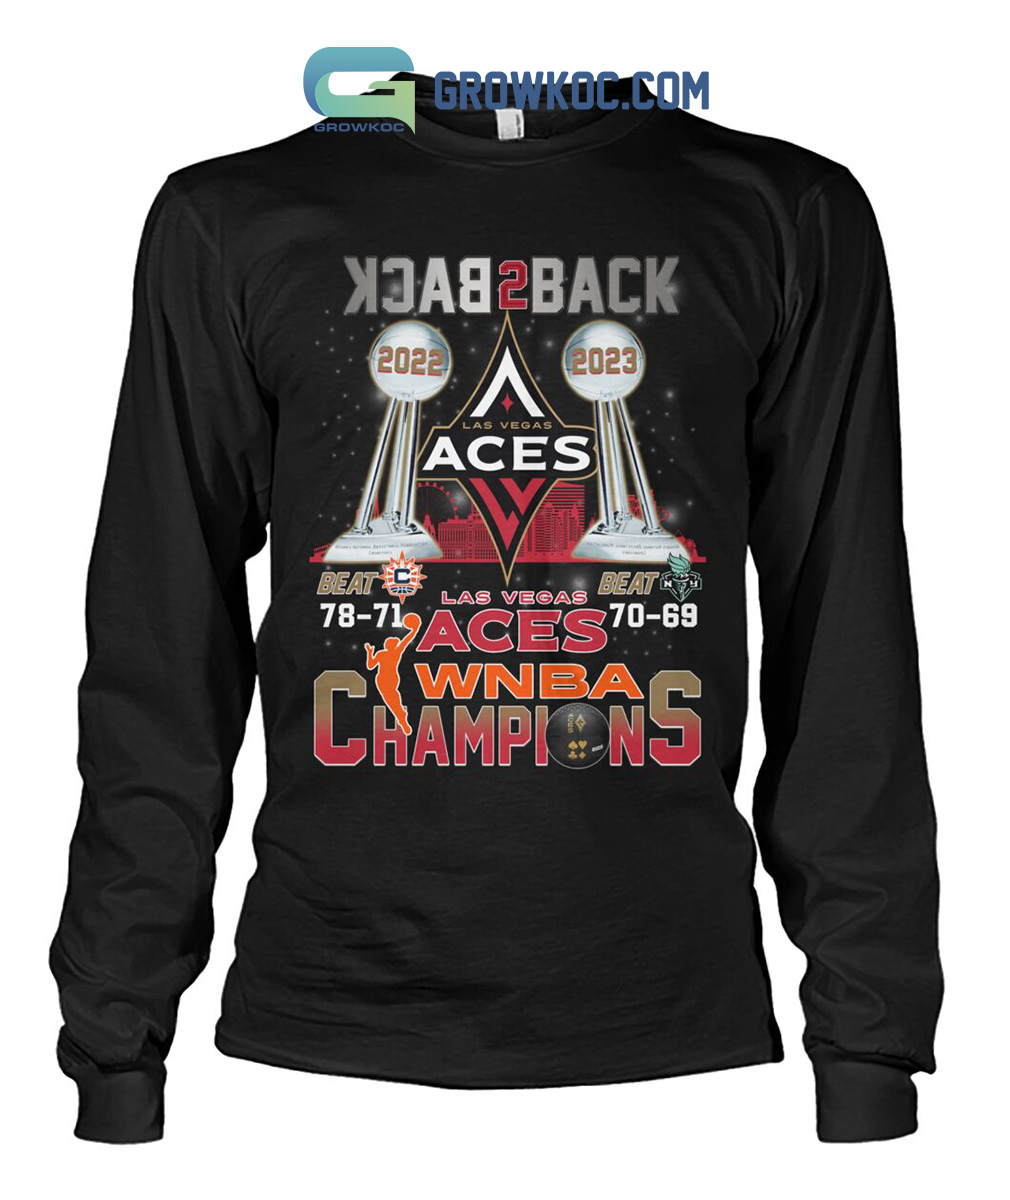 WNBA Las Vegas Aces Title Town Championship T-Shirt